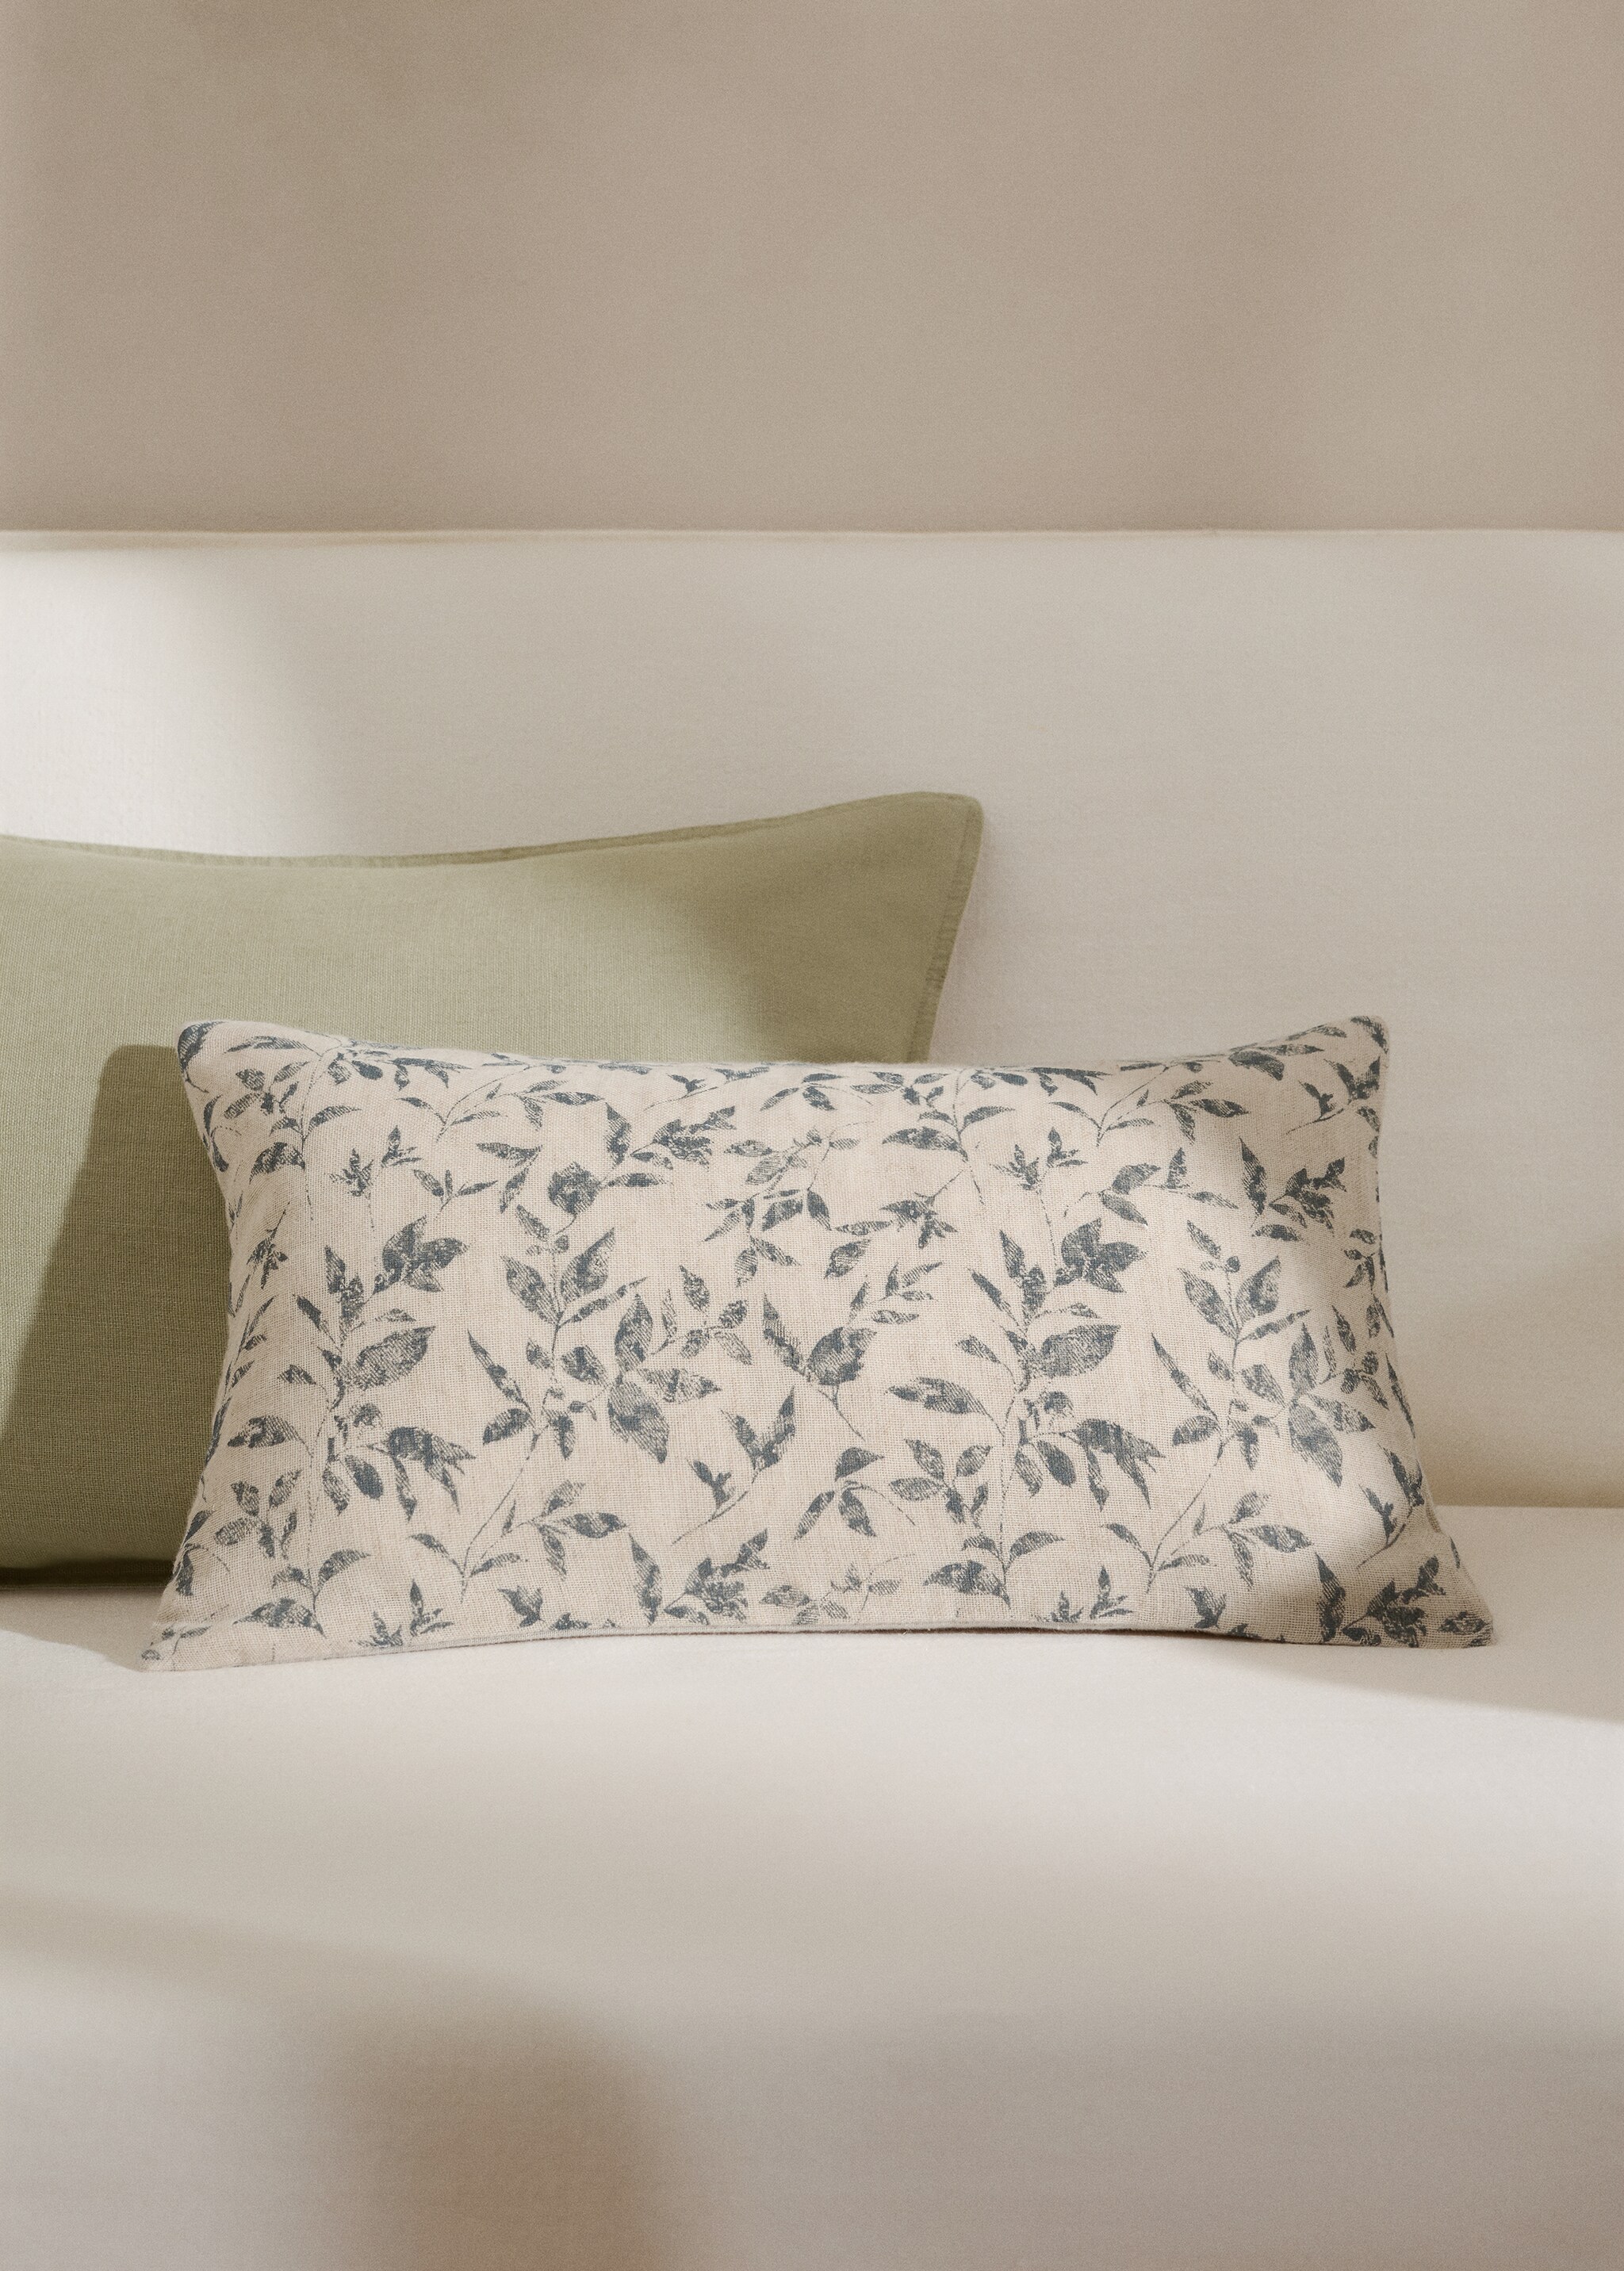 Cotton linen floral cushion cover 30x50cm - General plane